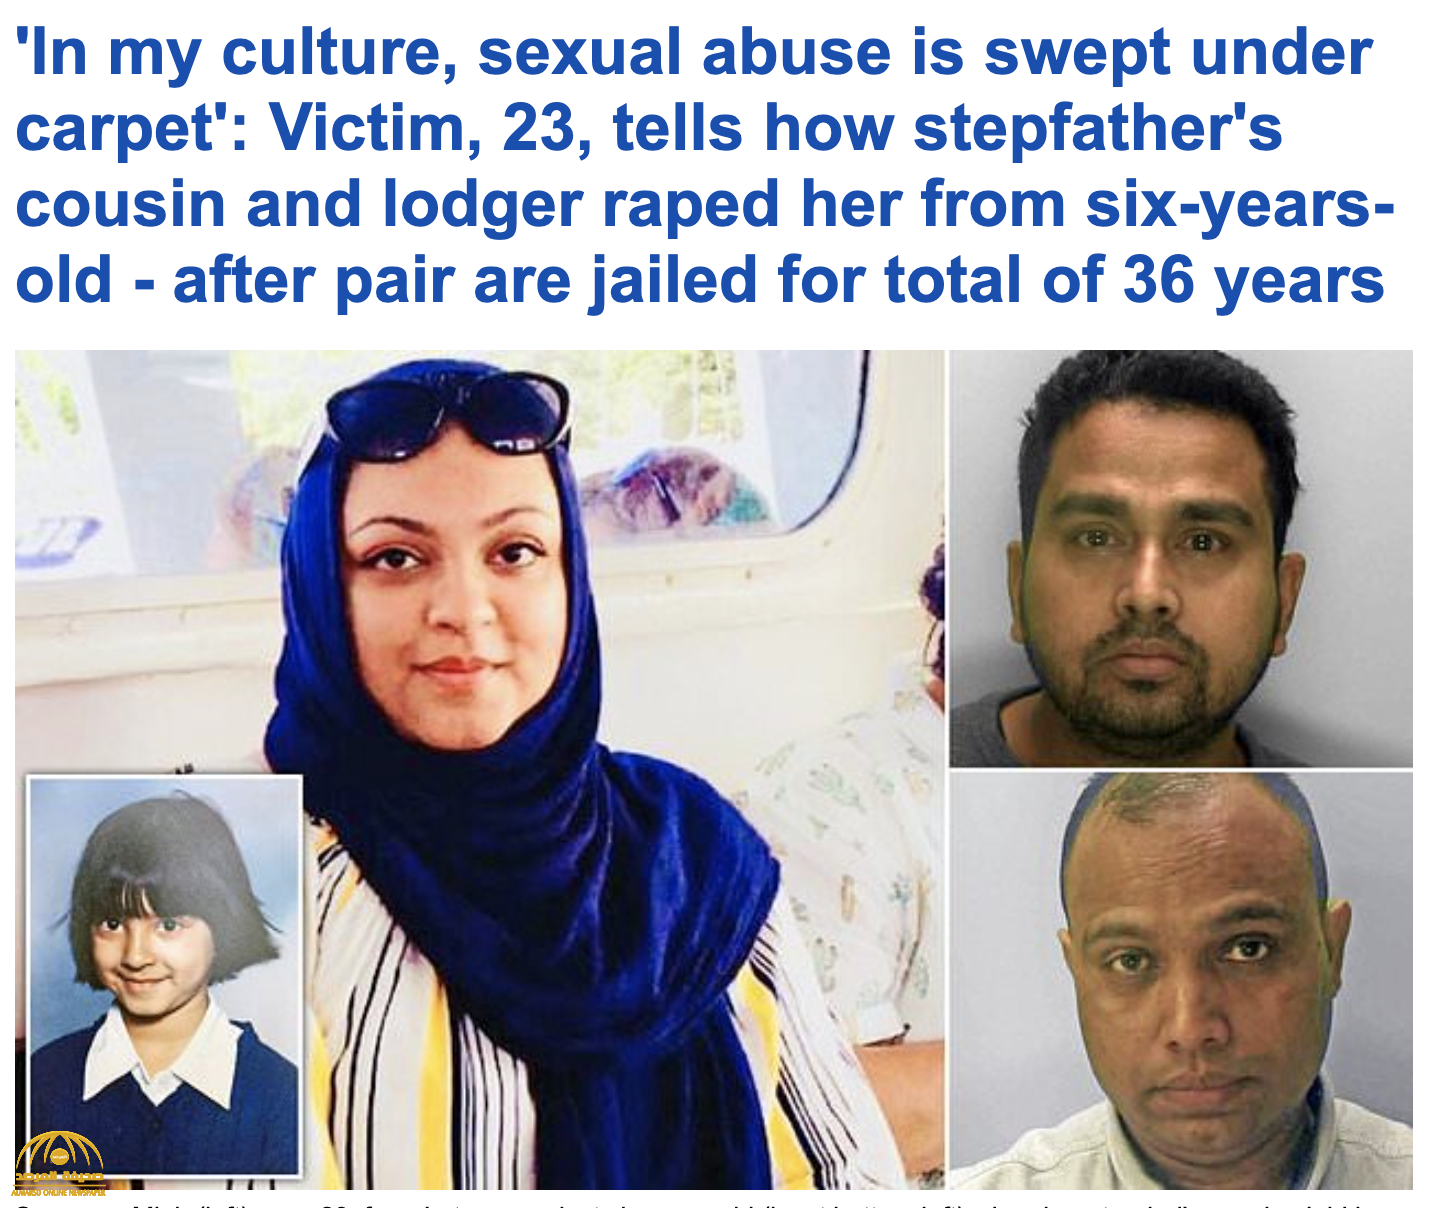 شابة مسلمة في بريطانيا تخرج عن صمتها وتروي تفاصيل اغتصابها على يد قريبها ومستأجر بمنزلهم!